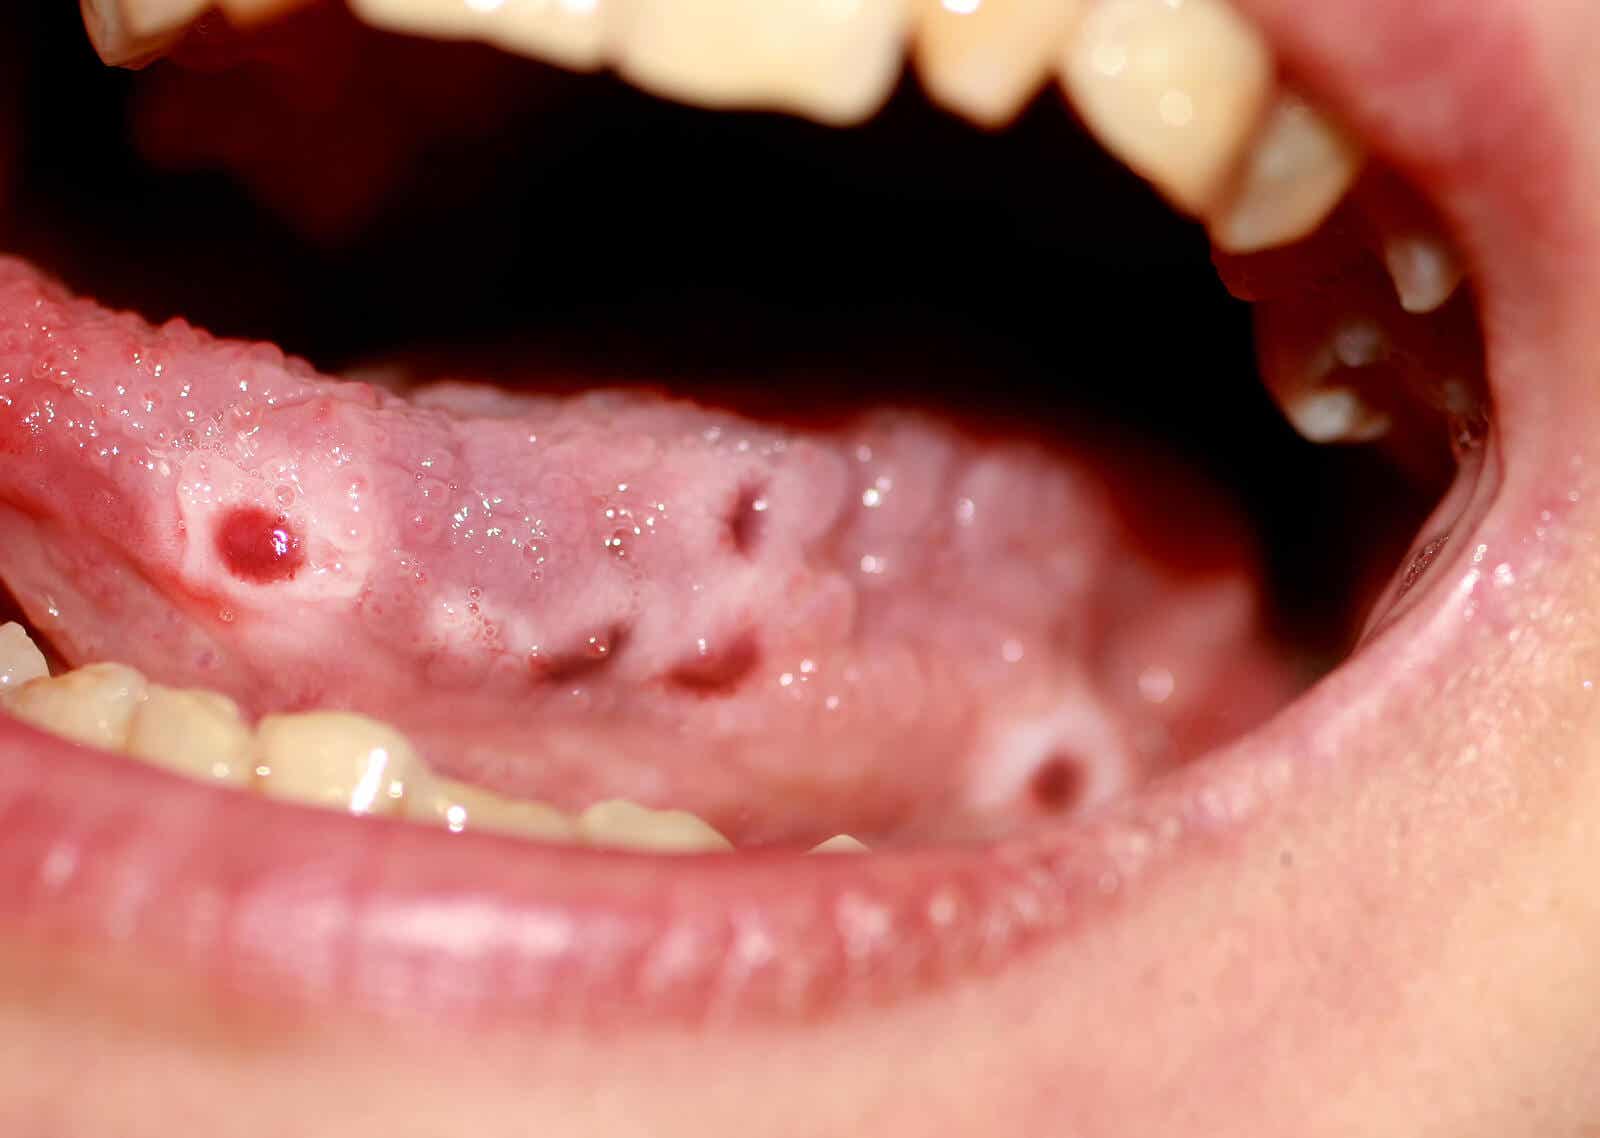 La candidiasis oral es una posible causa de las boqueras.